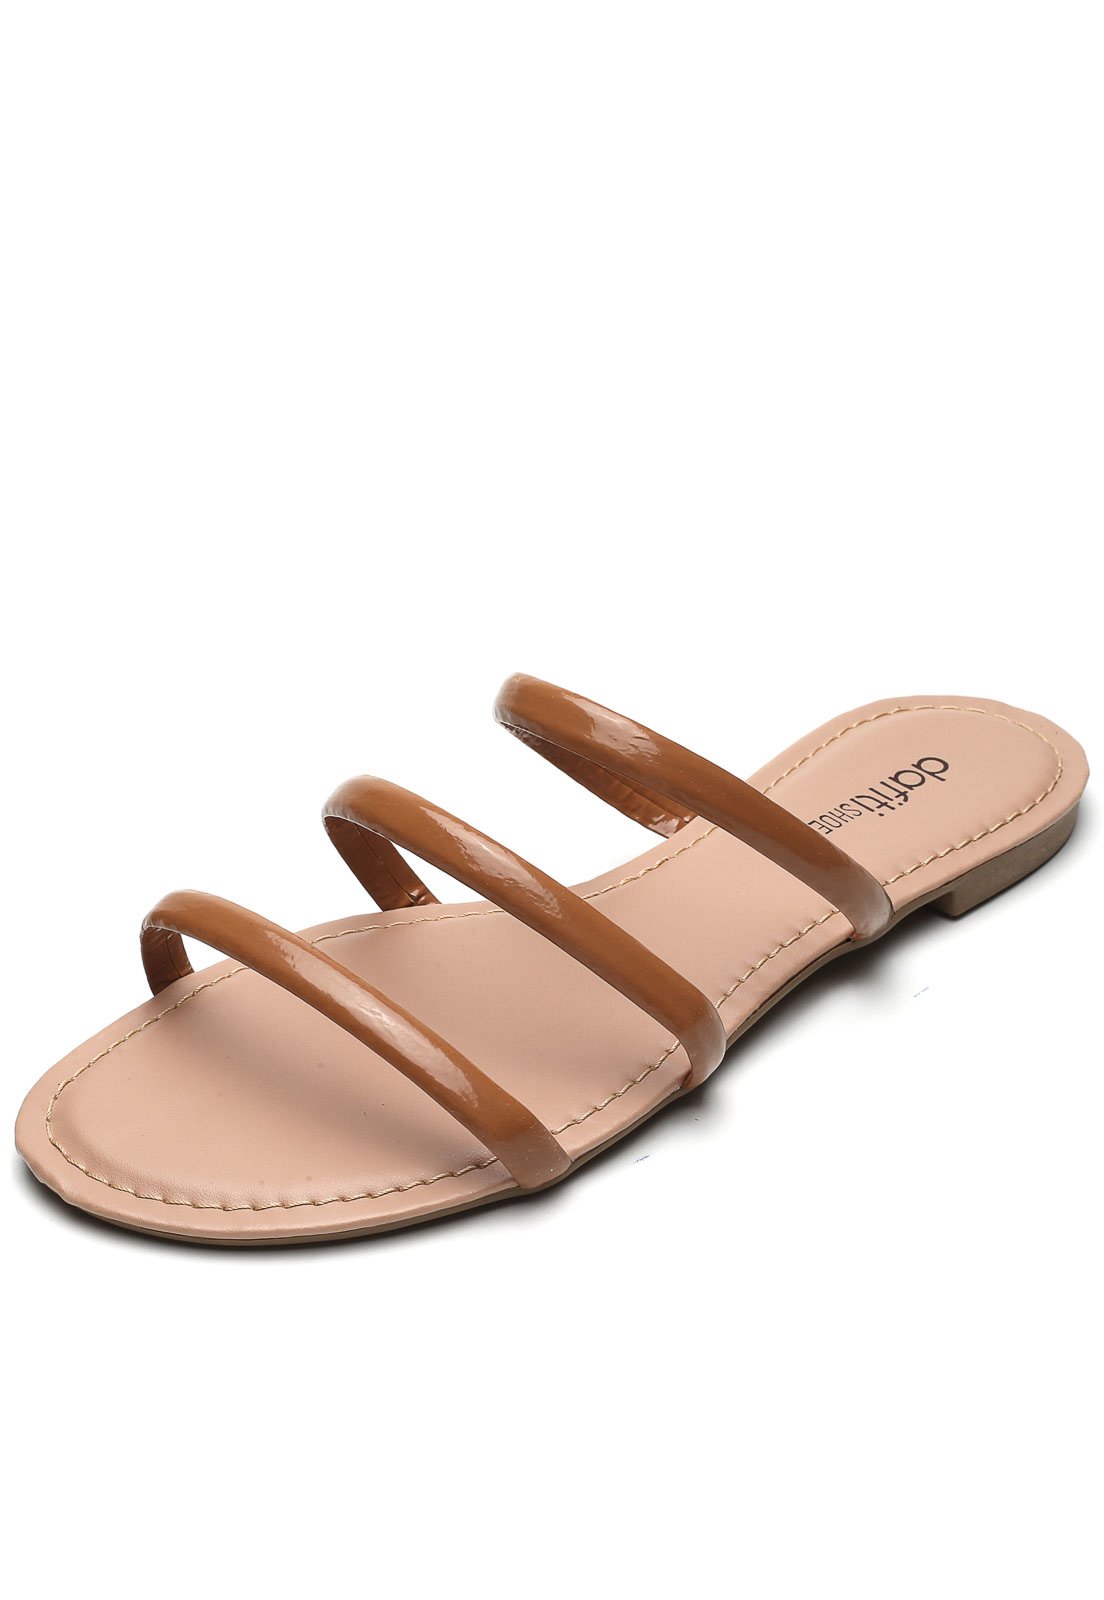 Sandália Dafiti Shoes Tiras Caramelo - Compre Agora